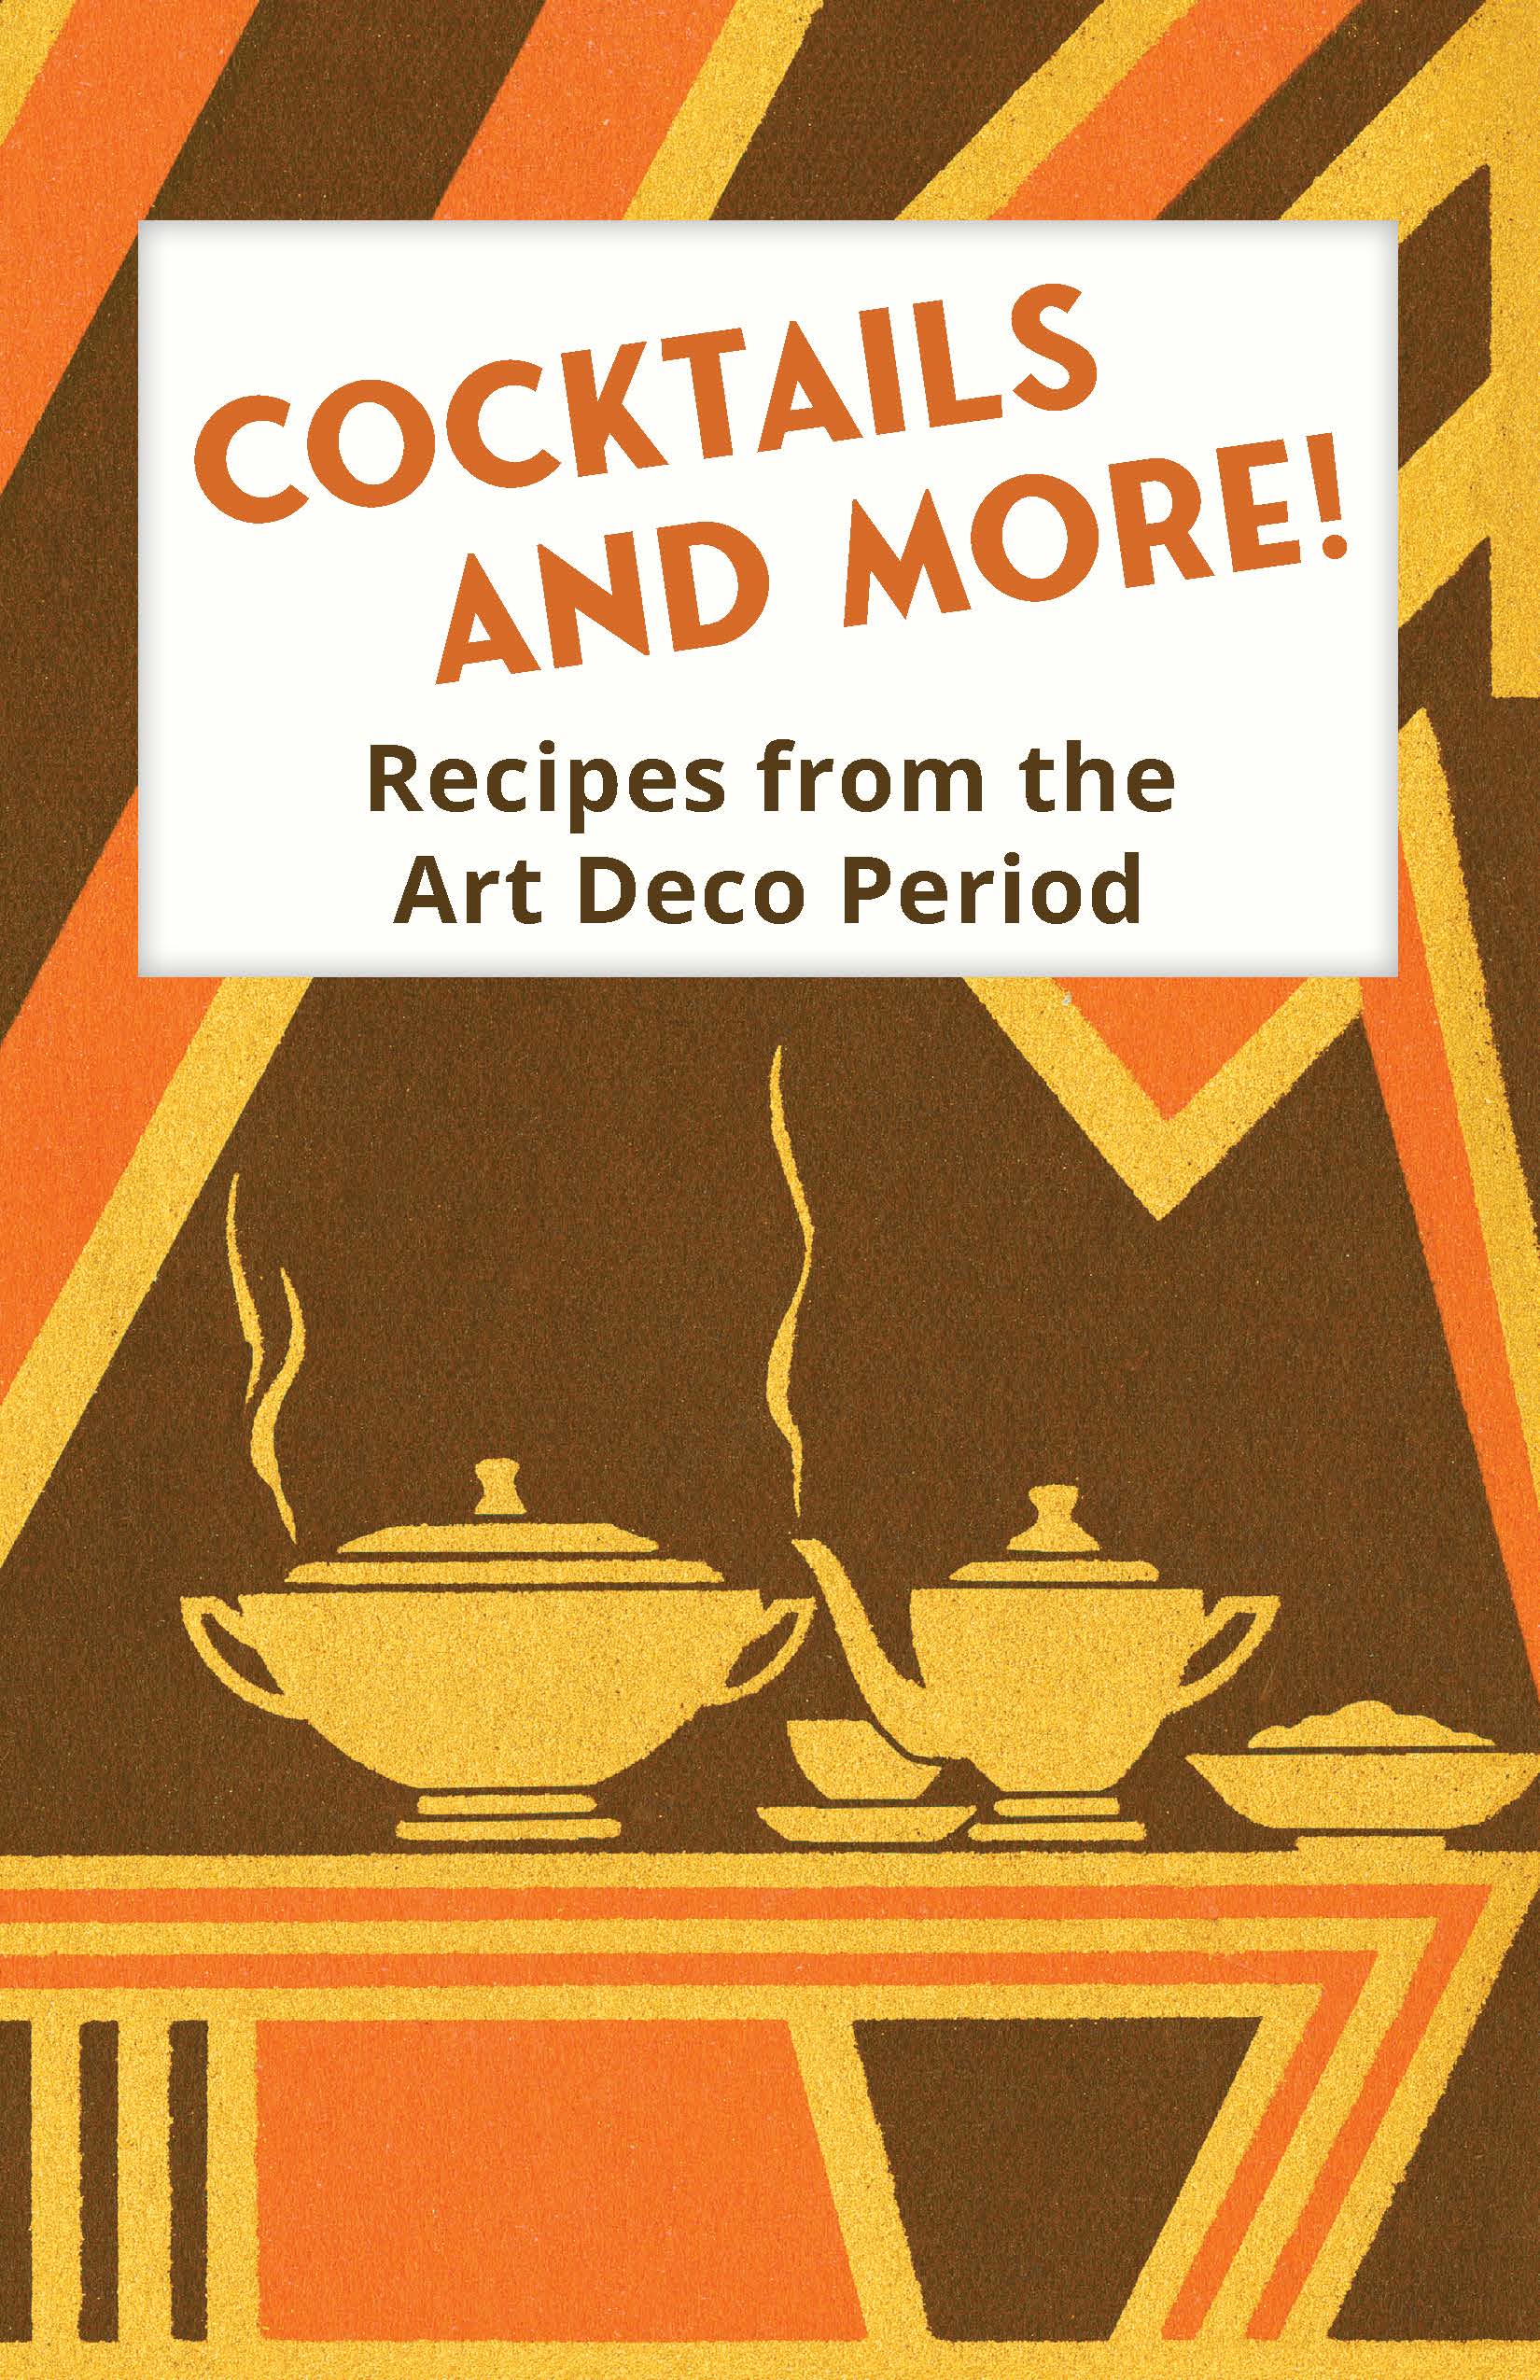 Art Deco Recipe Book Cover